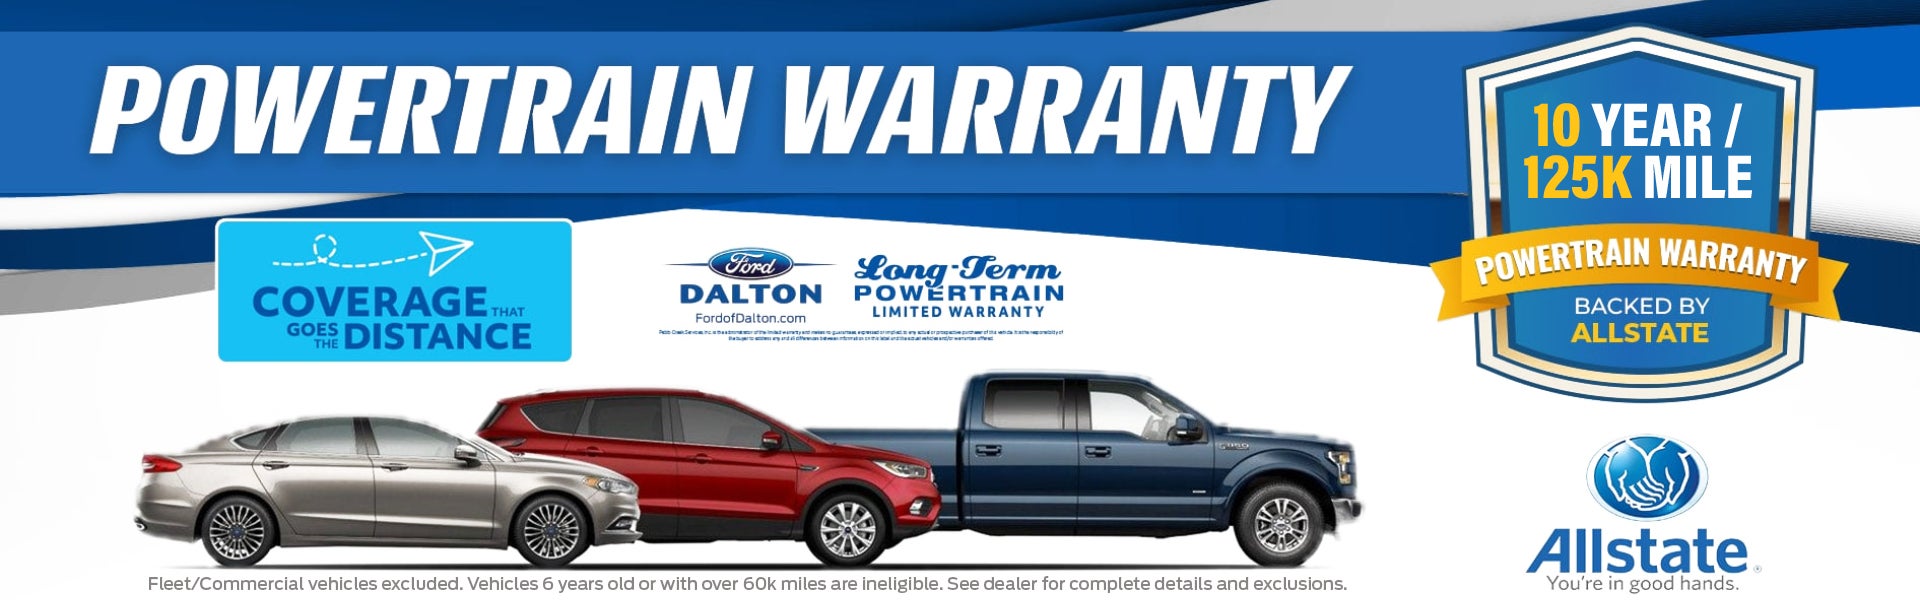 powertrain-warranty-allstate